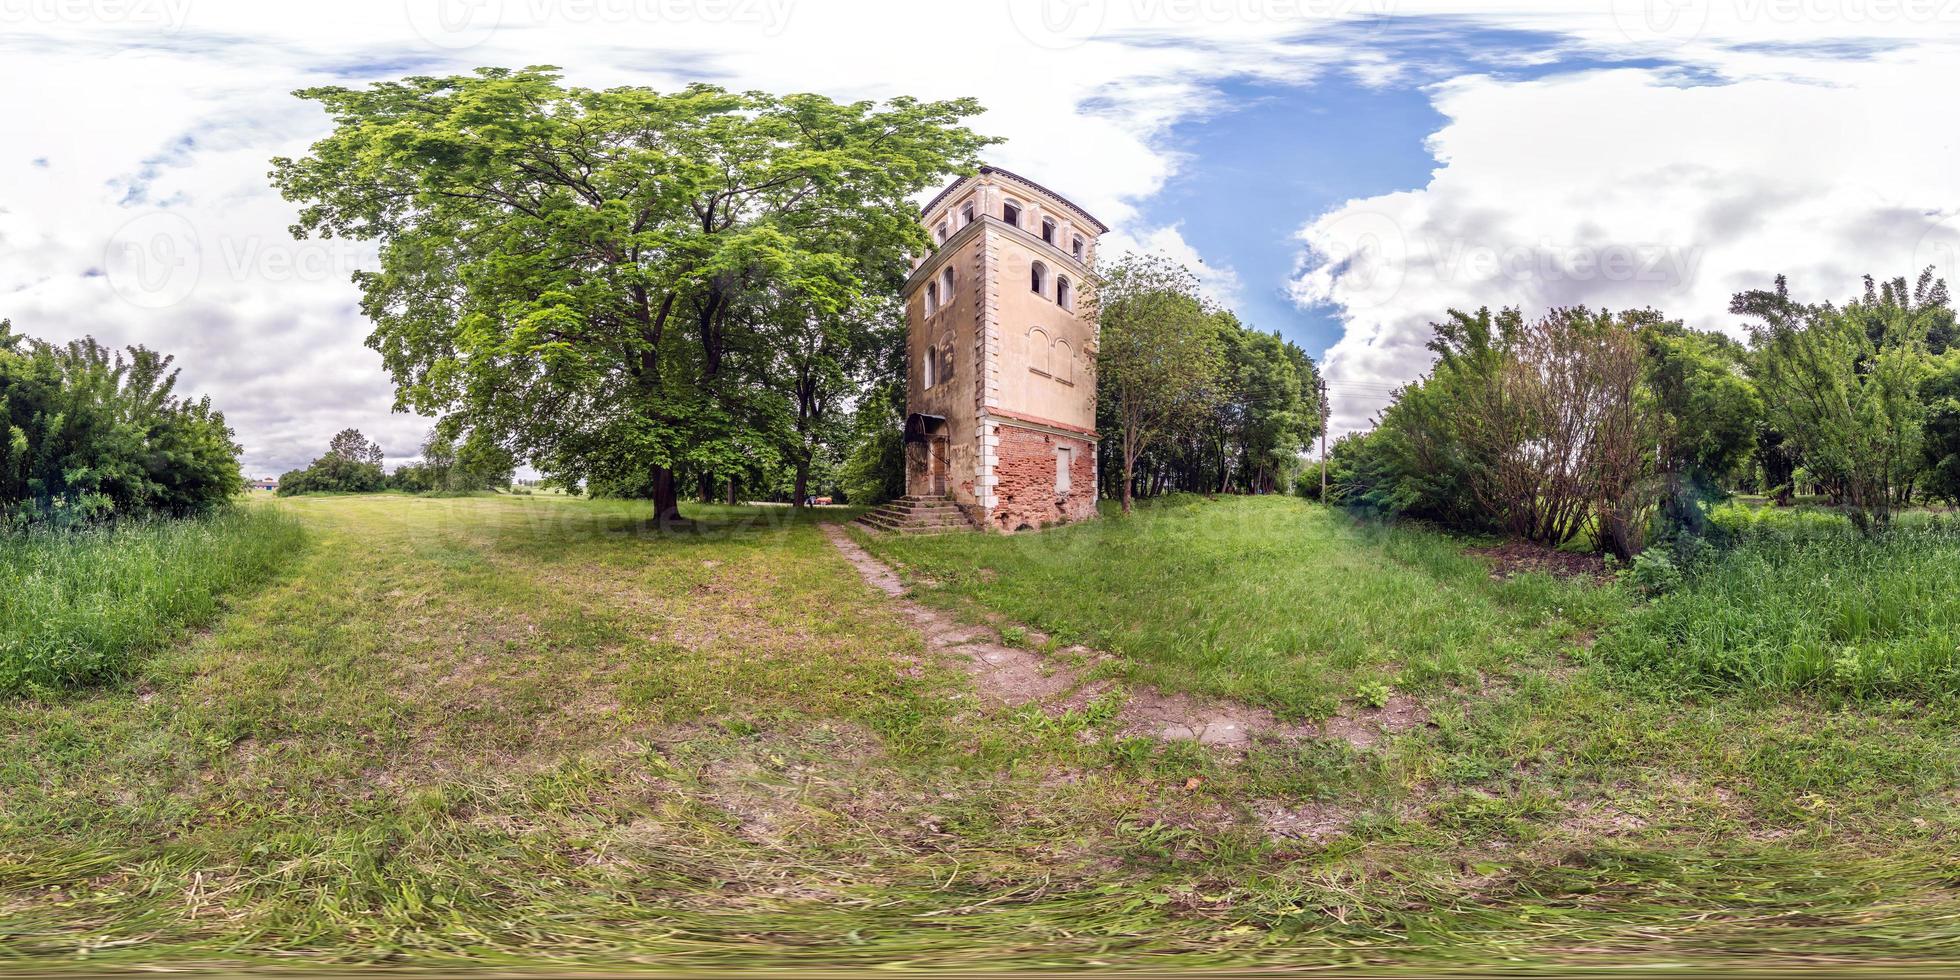 panorama hdri sphérique complet et harmonieux à 360 degrés sur la vieille tour de feu abandonnée en pierre dans le parc du village en projection équirectangulaire, prêt pour le contenu de réalité virtuelle vr ar photo